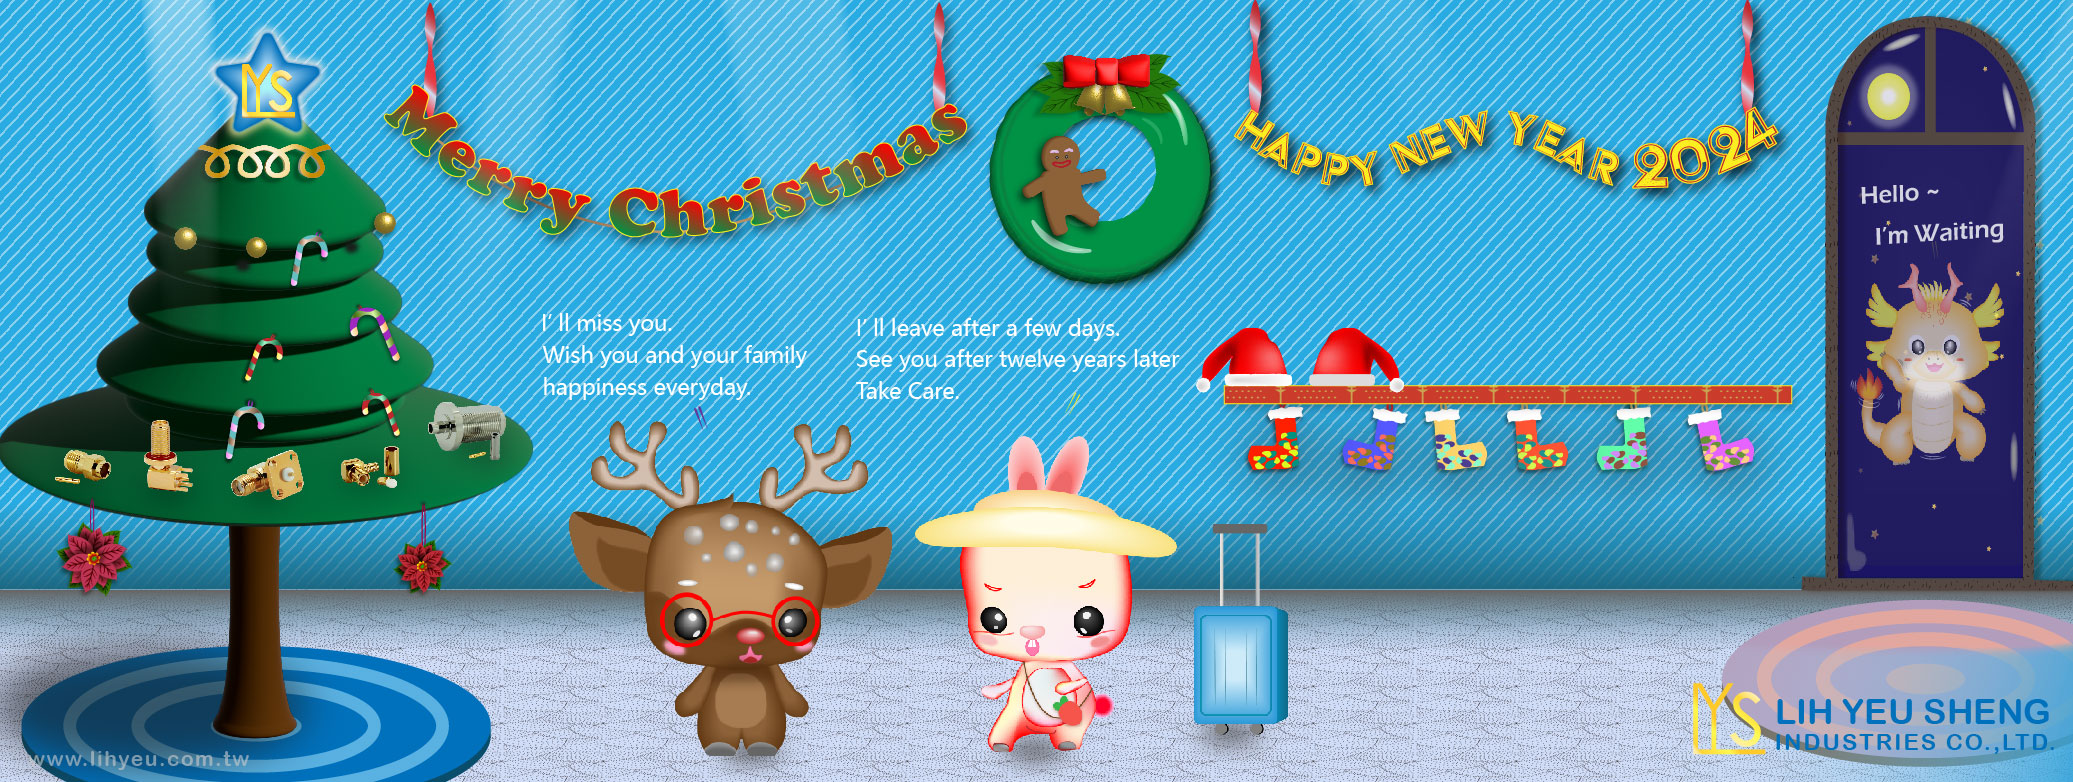 LIH YEU SHENG Wish you Merry Christmas & Happy New Year 2024